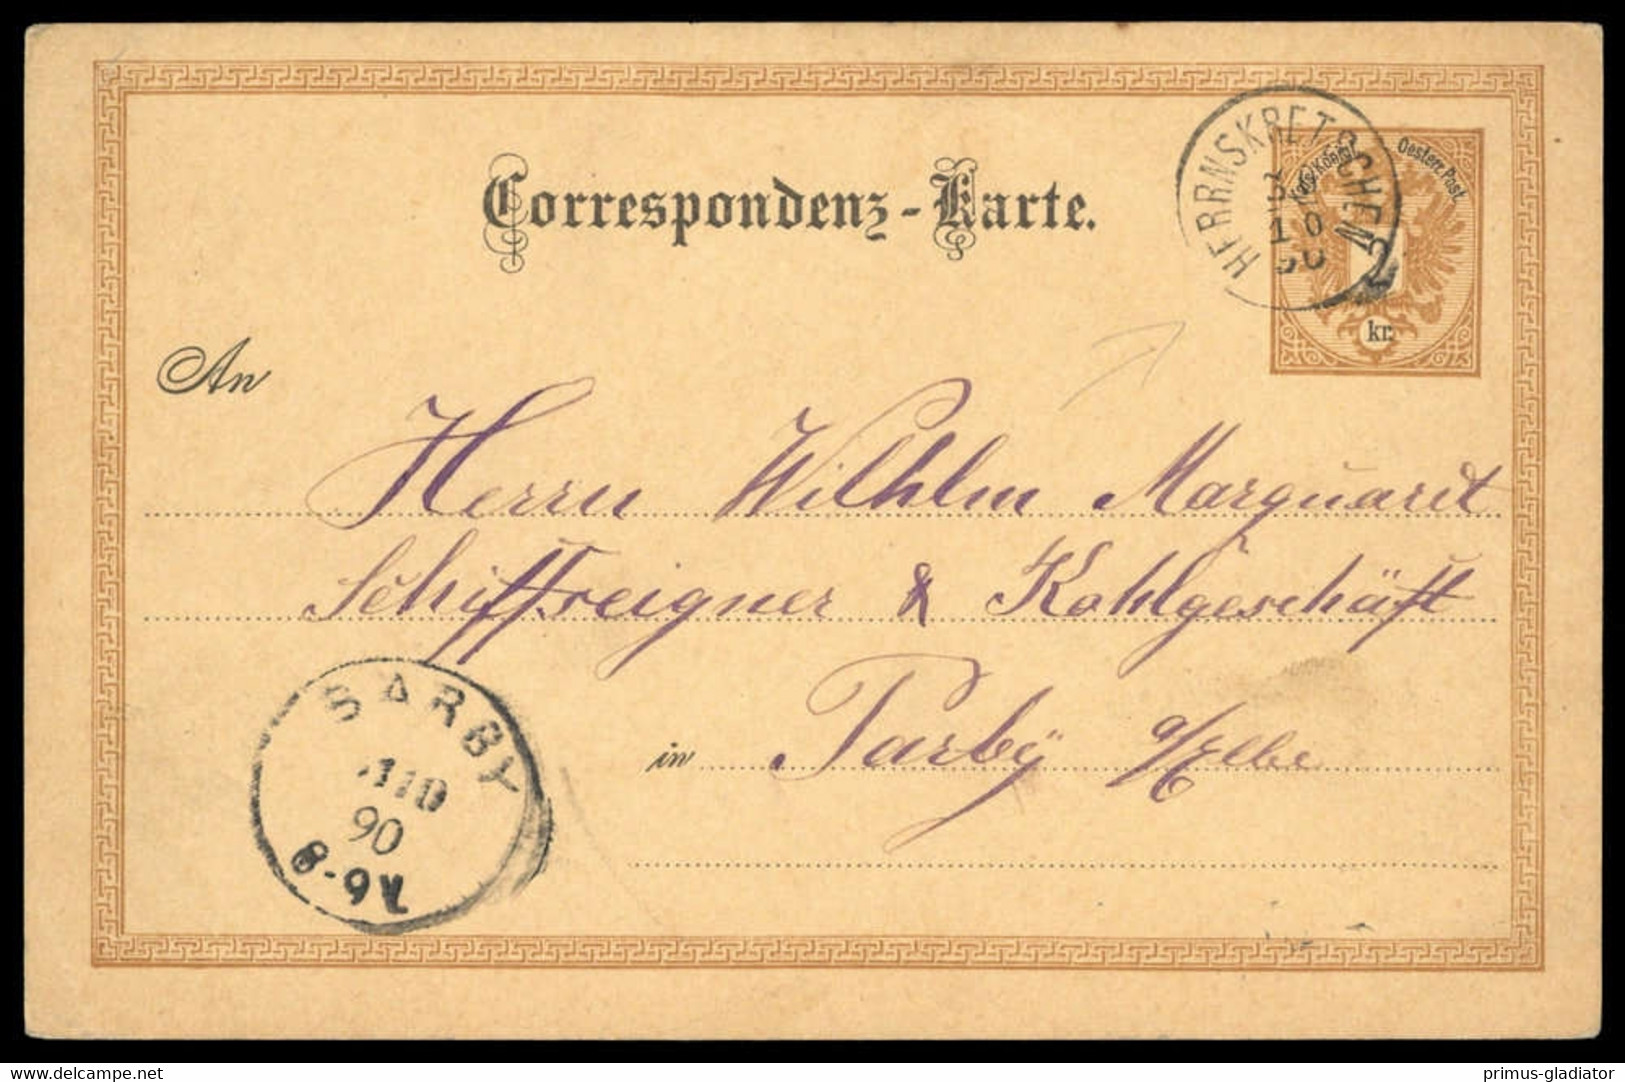 Österreich, GA, Brief - Machine Postmarks